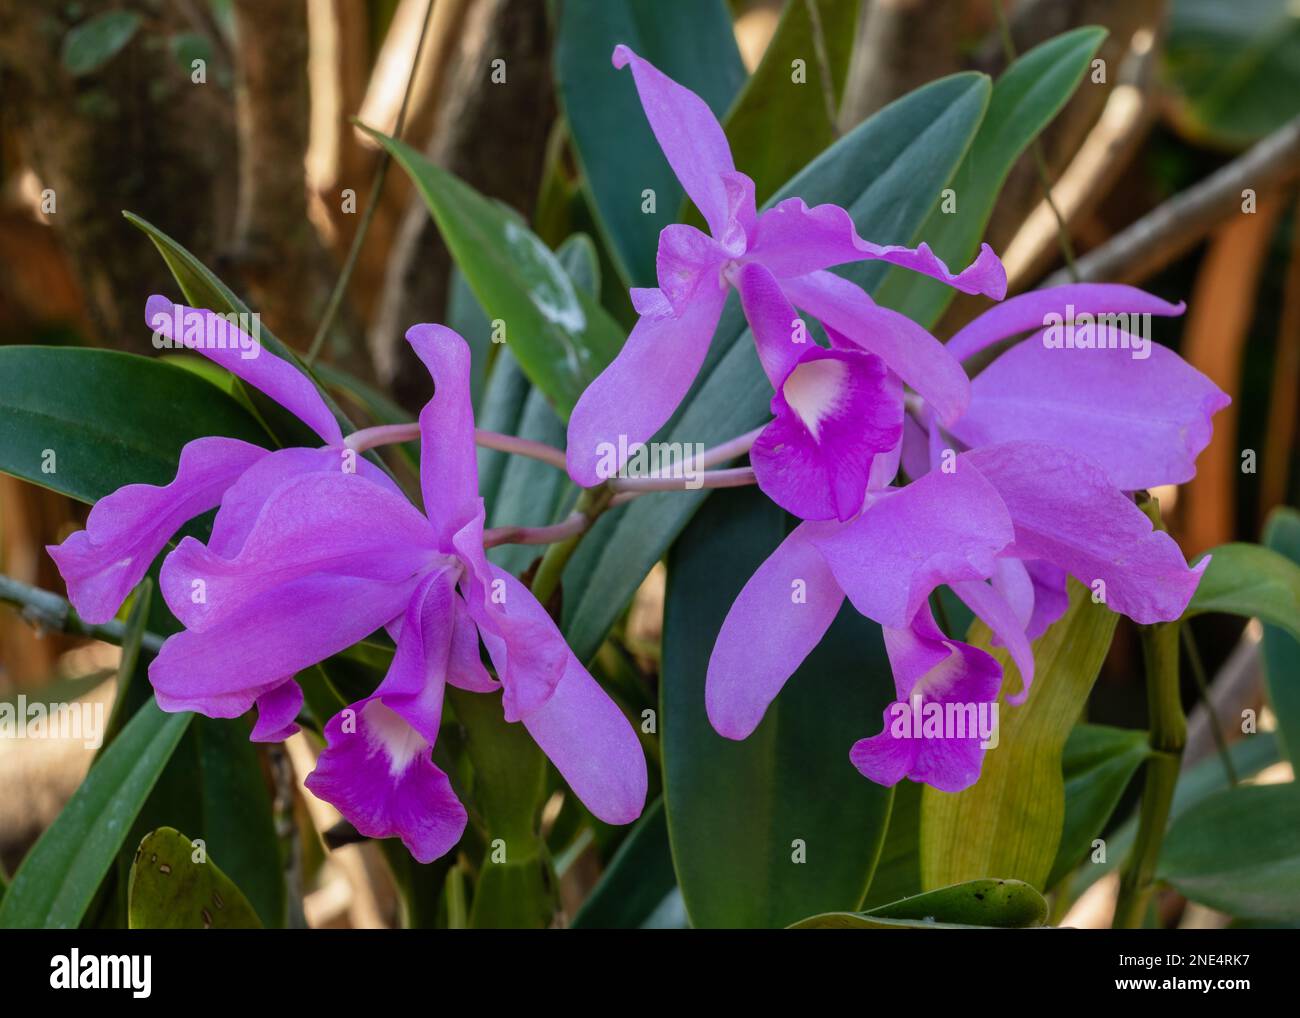 Gros plan sur les fleurs violettes et blanches de l'hybride d'orchidées de cattleya qui fleurit à l'extérieur sur fond naturel Banque D'Images